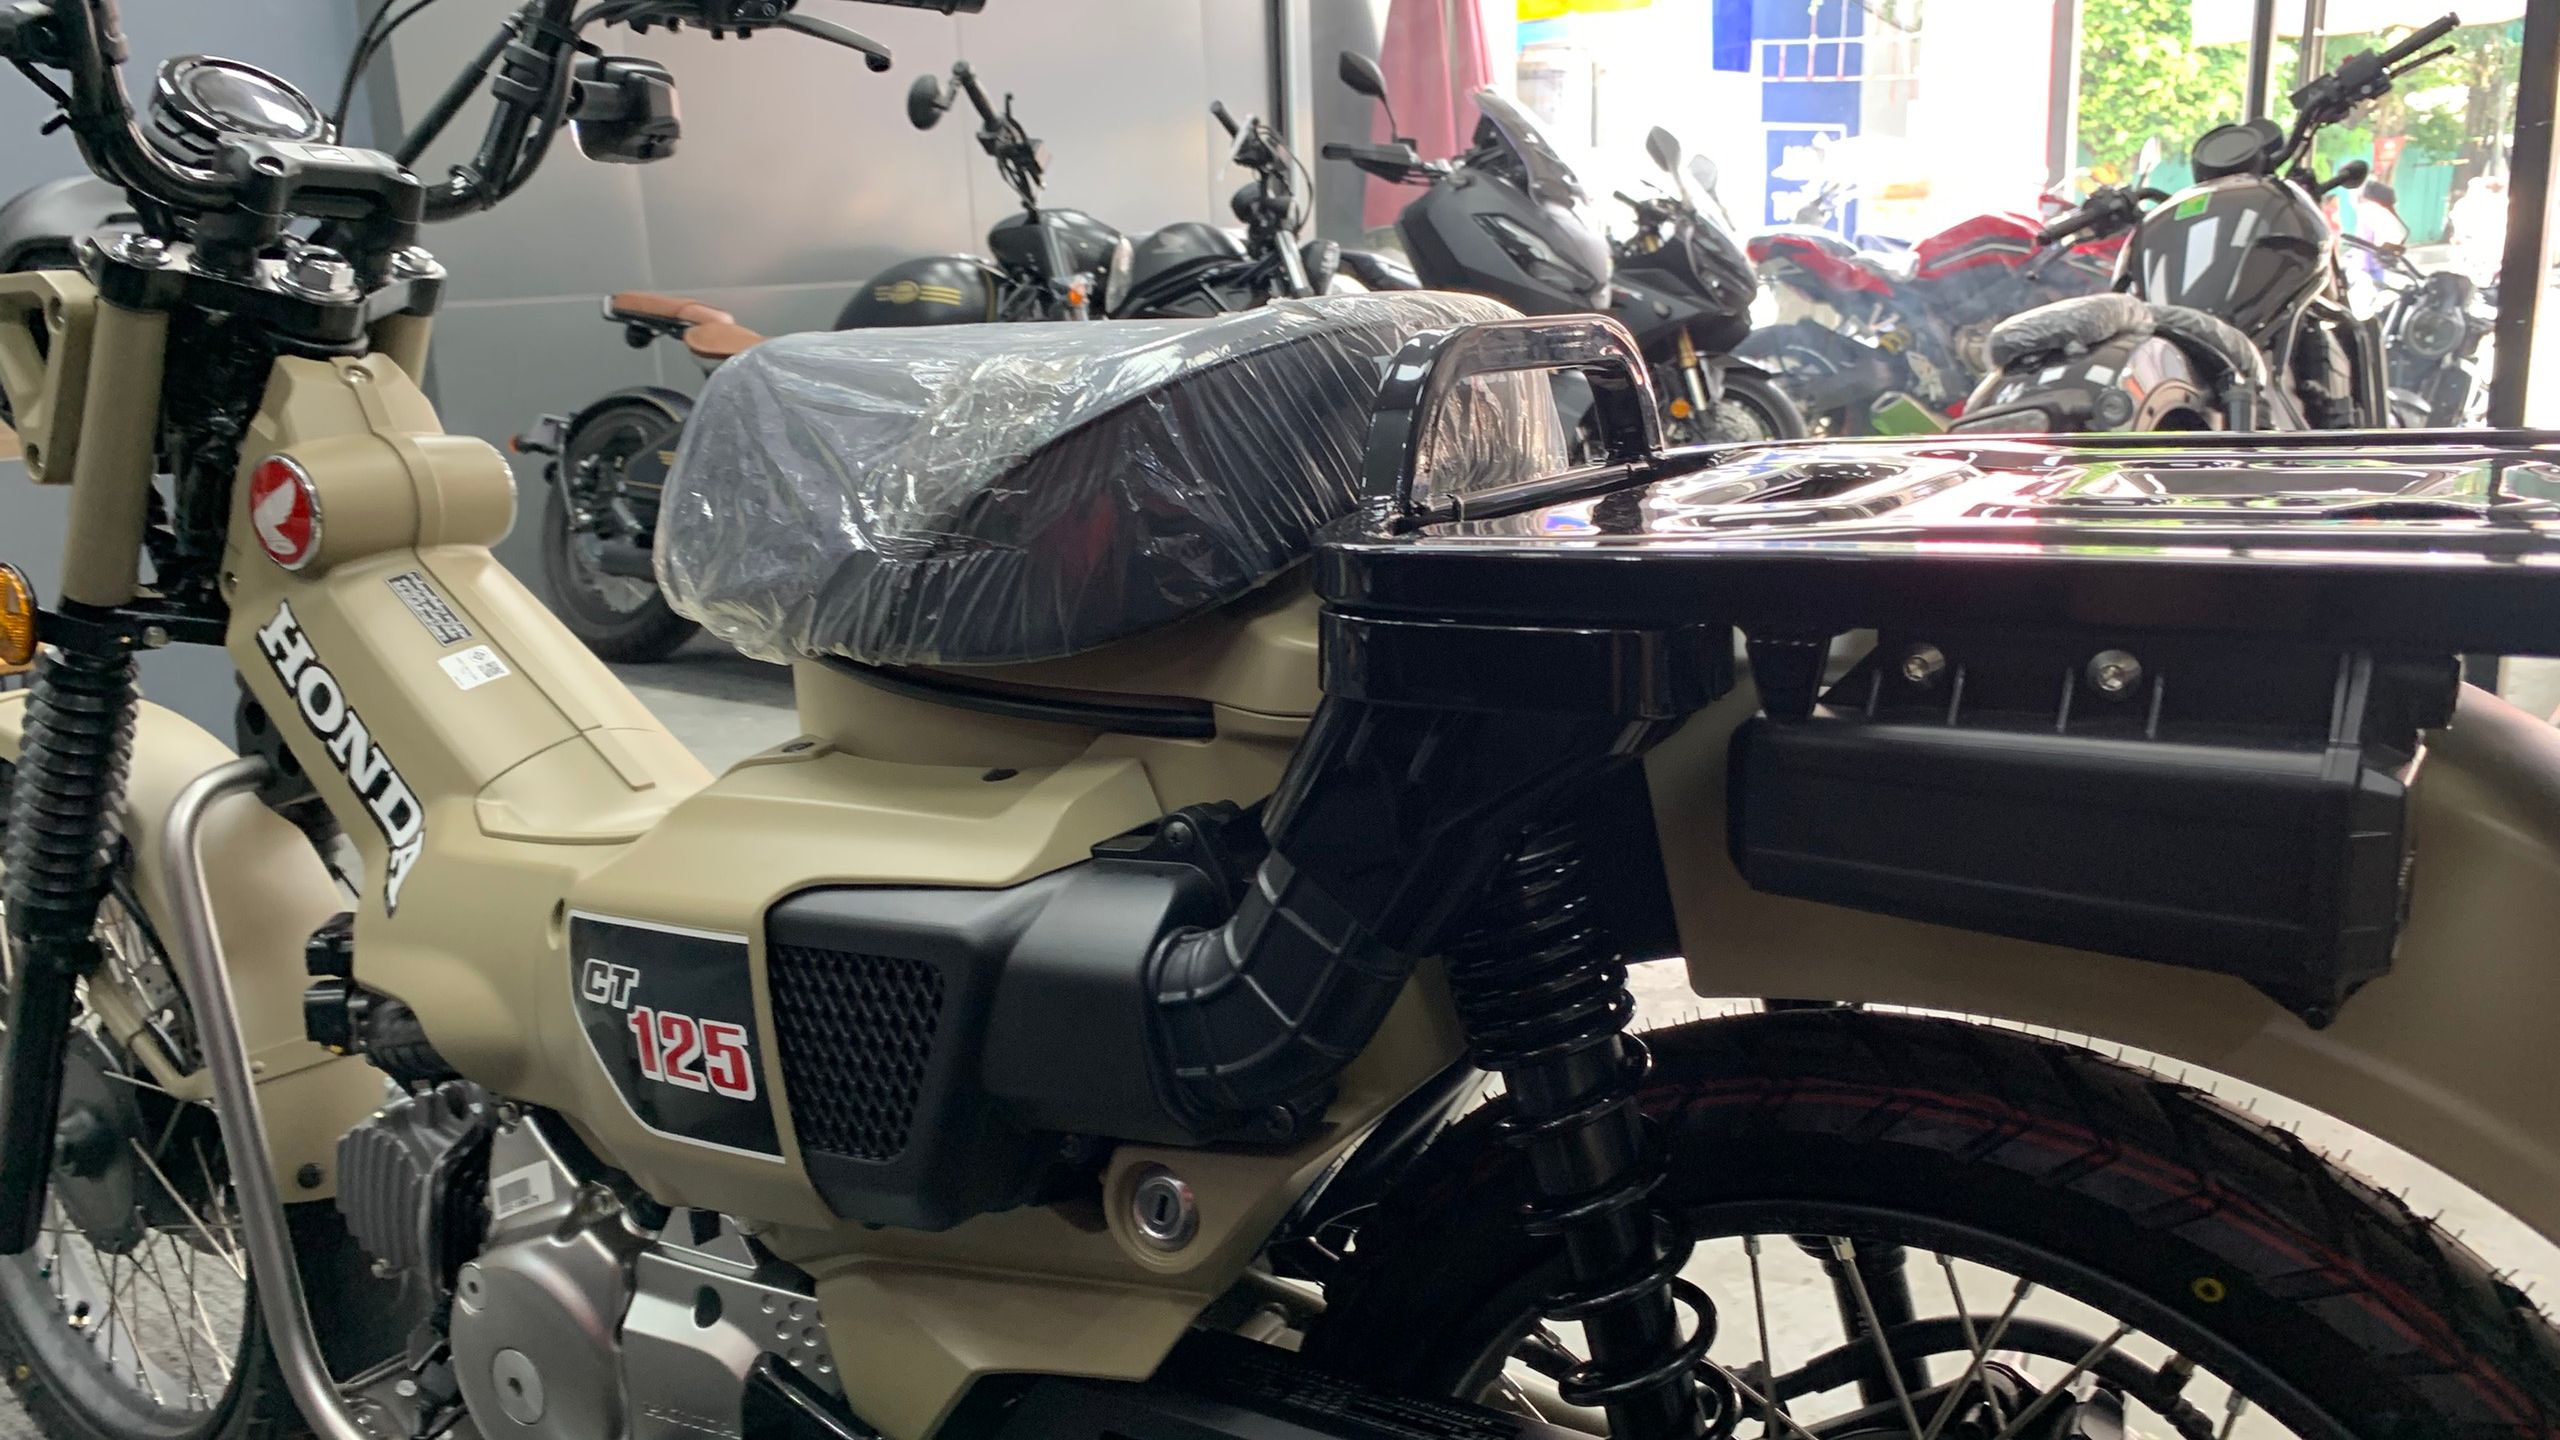 Honda CT125 chuẩn bị được phân phối chính hãng tại Việt Nam  Motosaigon